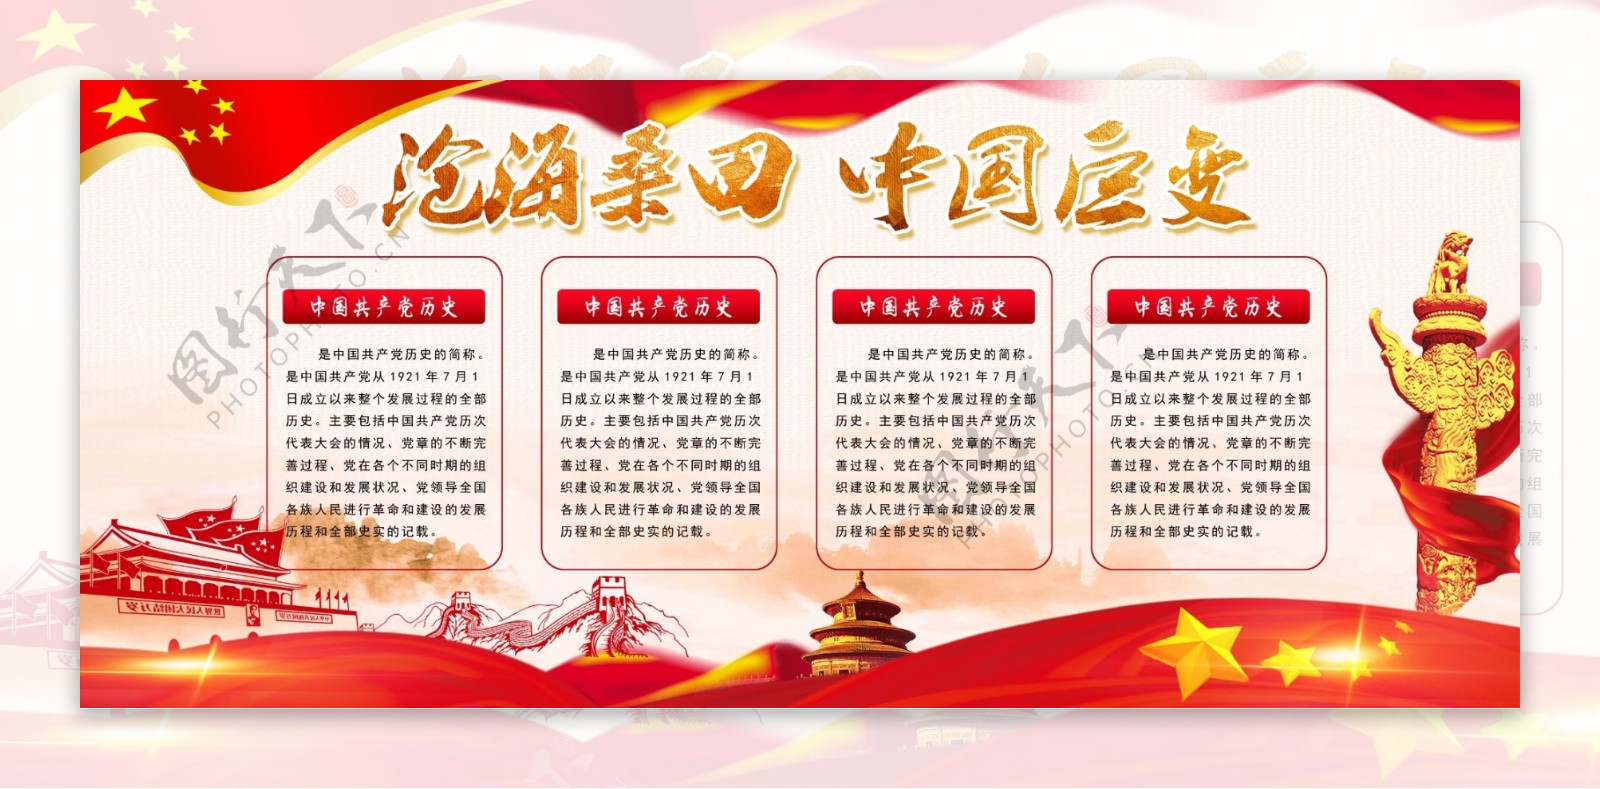 沧海桑田中国巨变改革开放40周年纪念展板